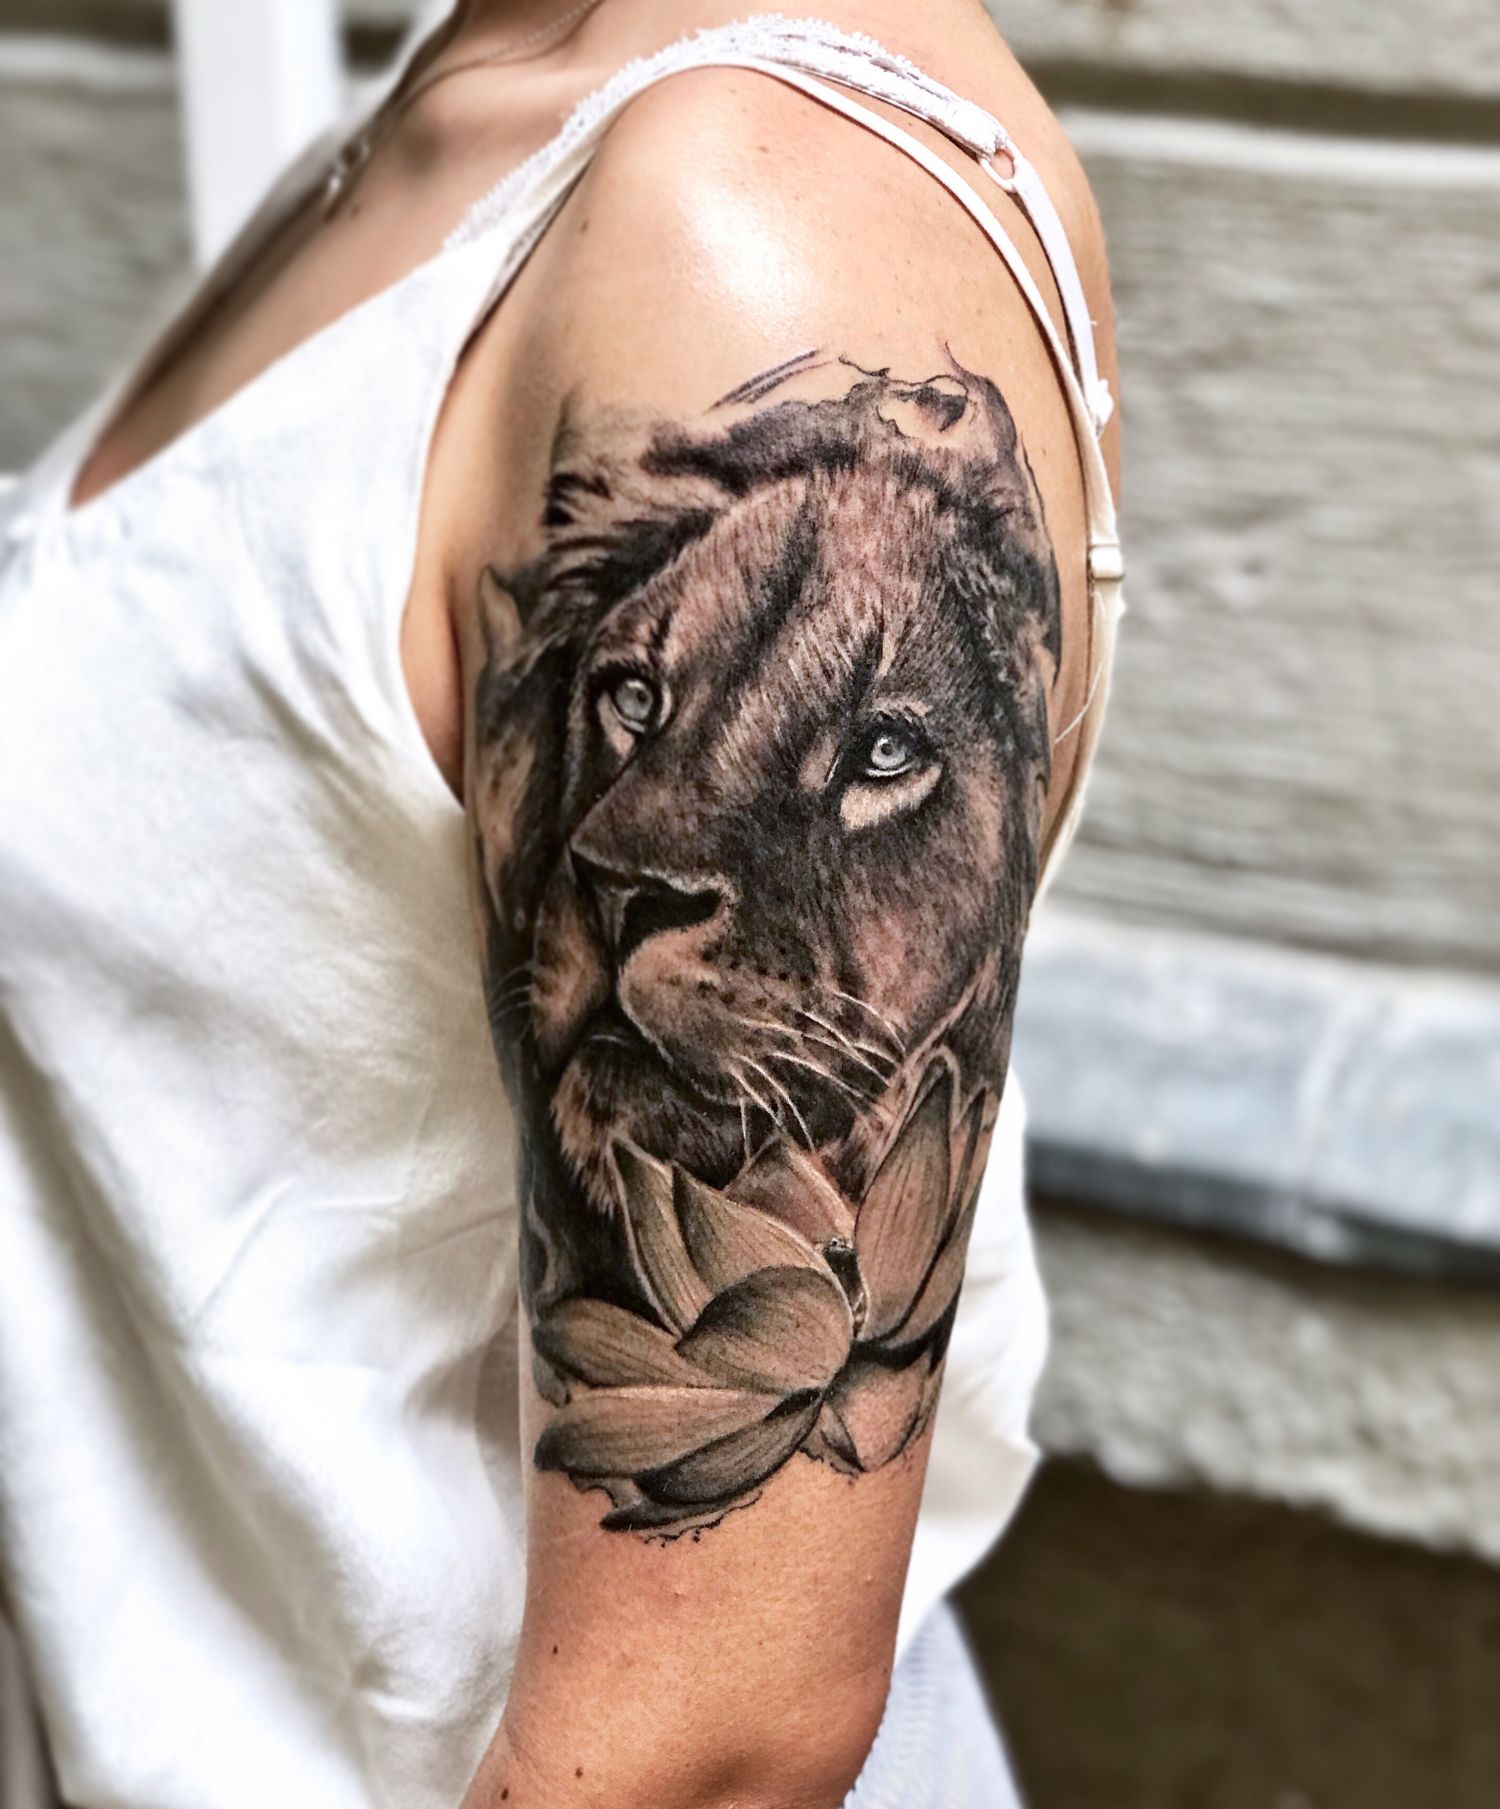 Állat tetoválás, Fekete fehér tetoválás, Felkar tetoválás, Portré tetoválás, Realisztikus tetoválás